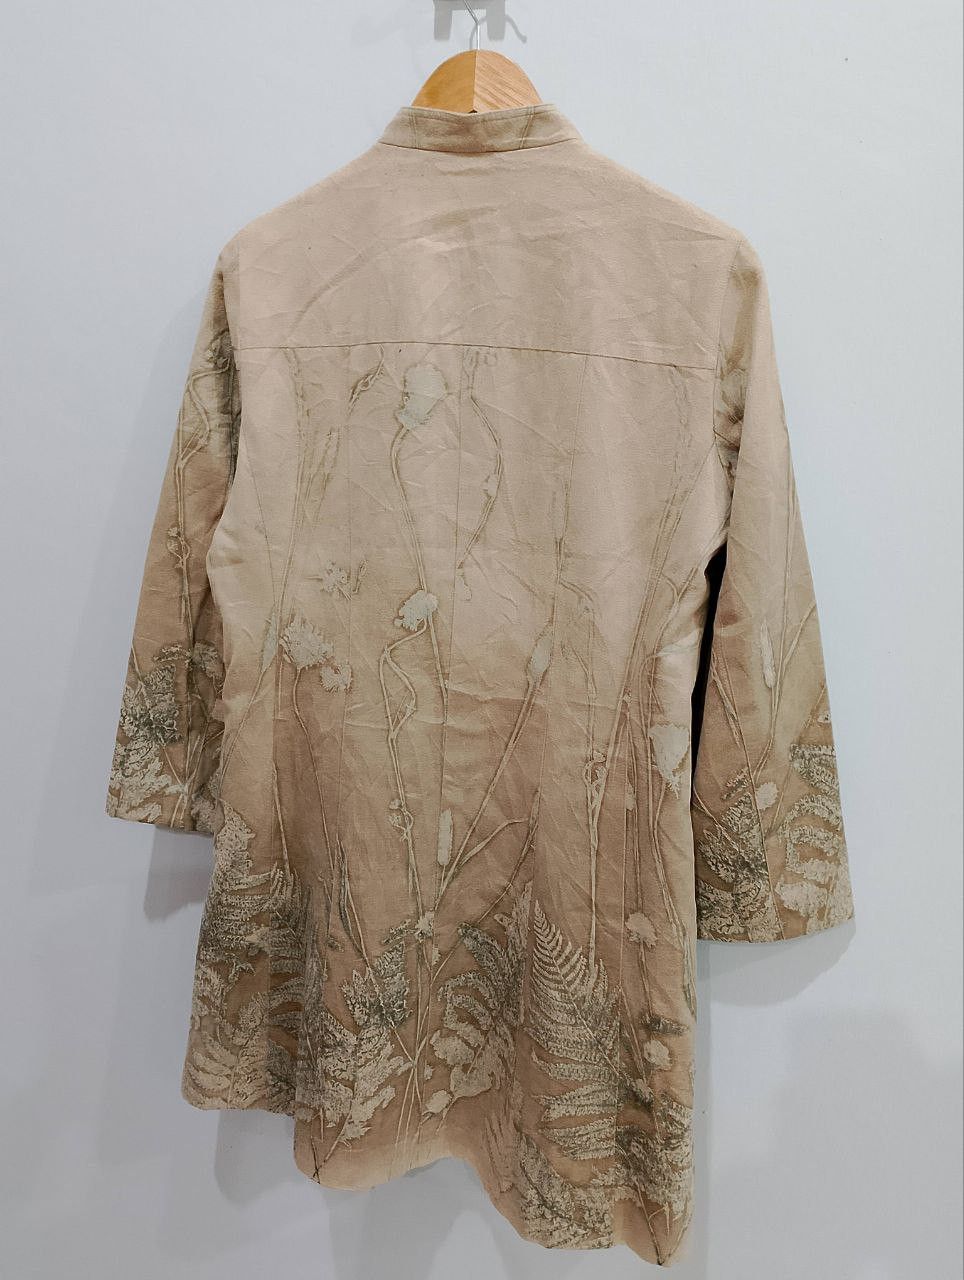 Vintage DANA PARIS Floral Jacquard Style Dress Coat Jacket - 6